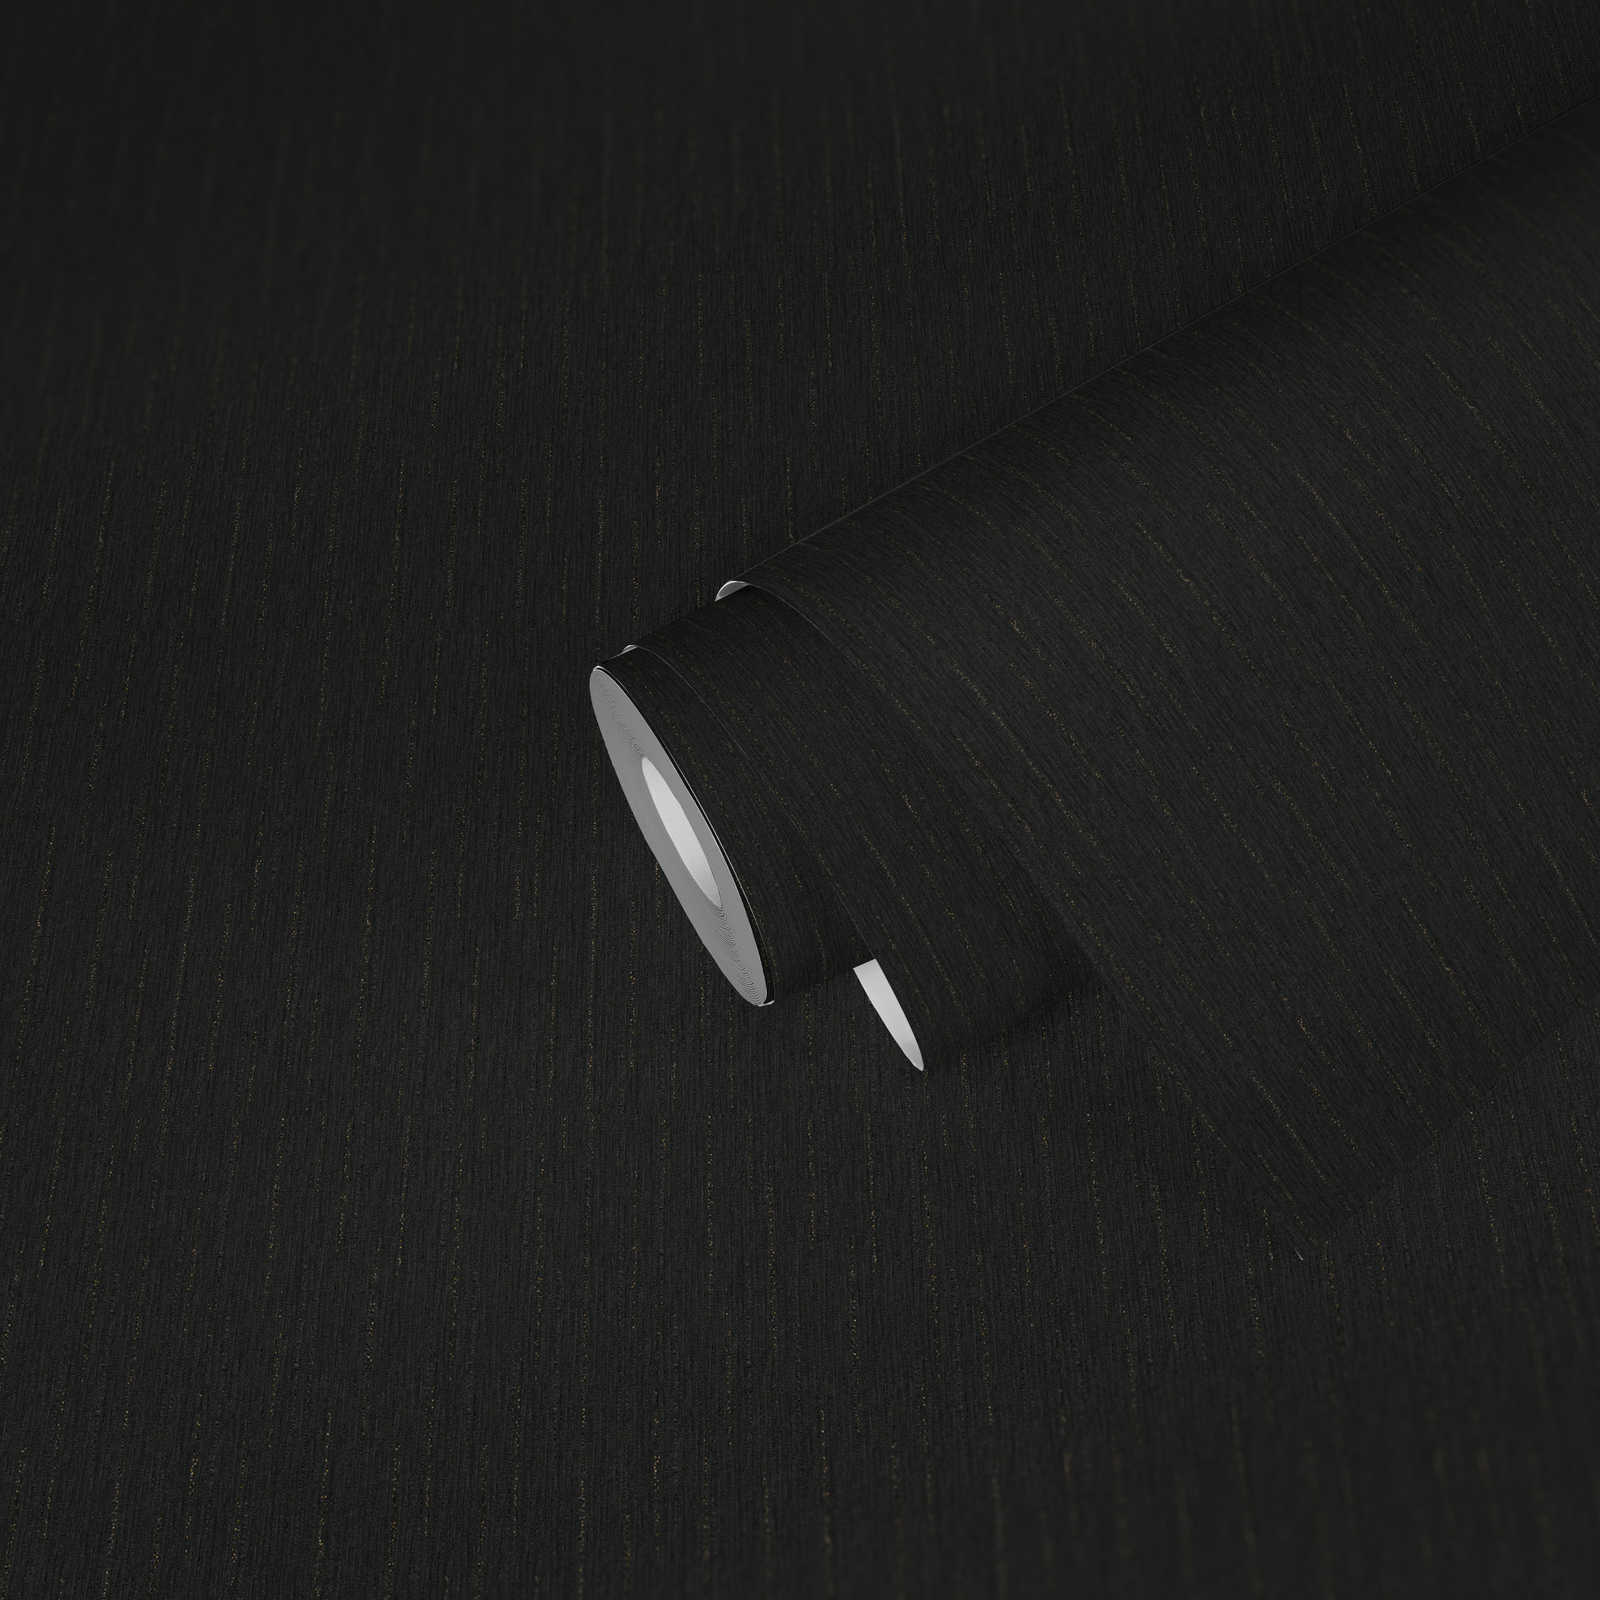             Zwart eenheidsbehang met fijne glitterdraden - Zwart
        